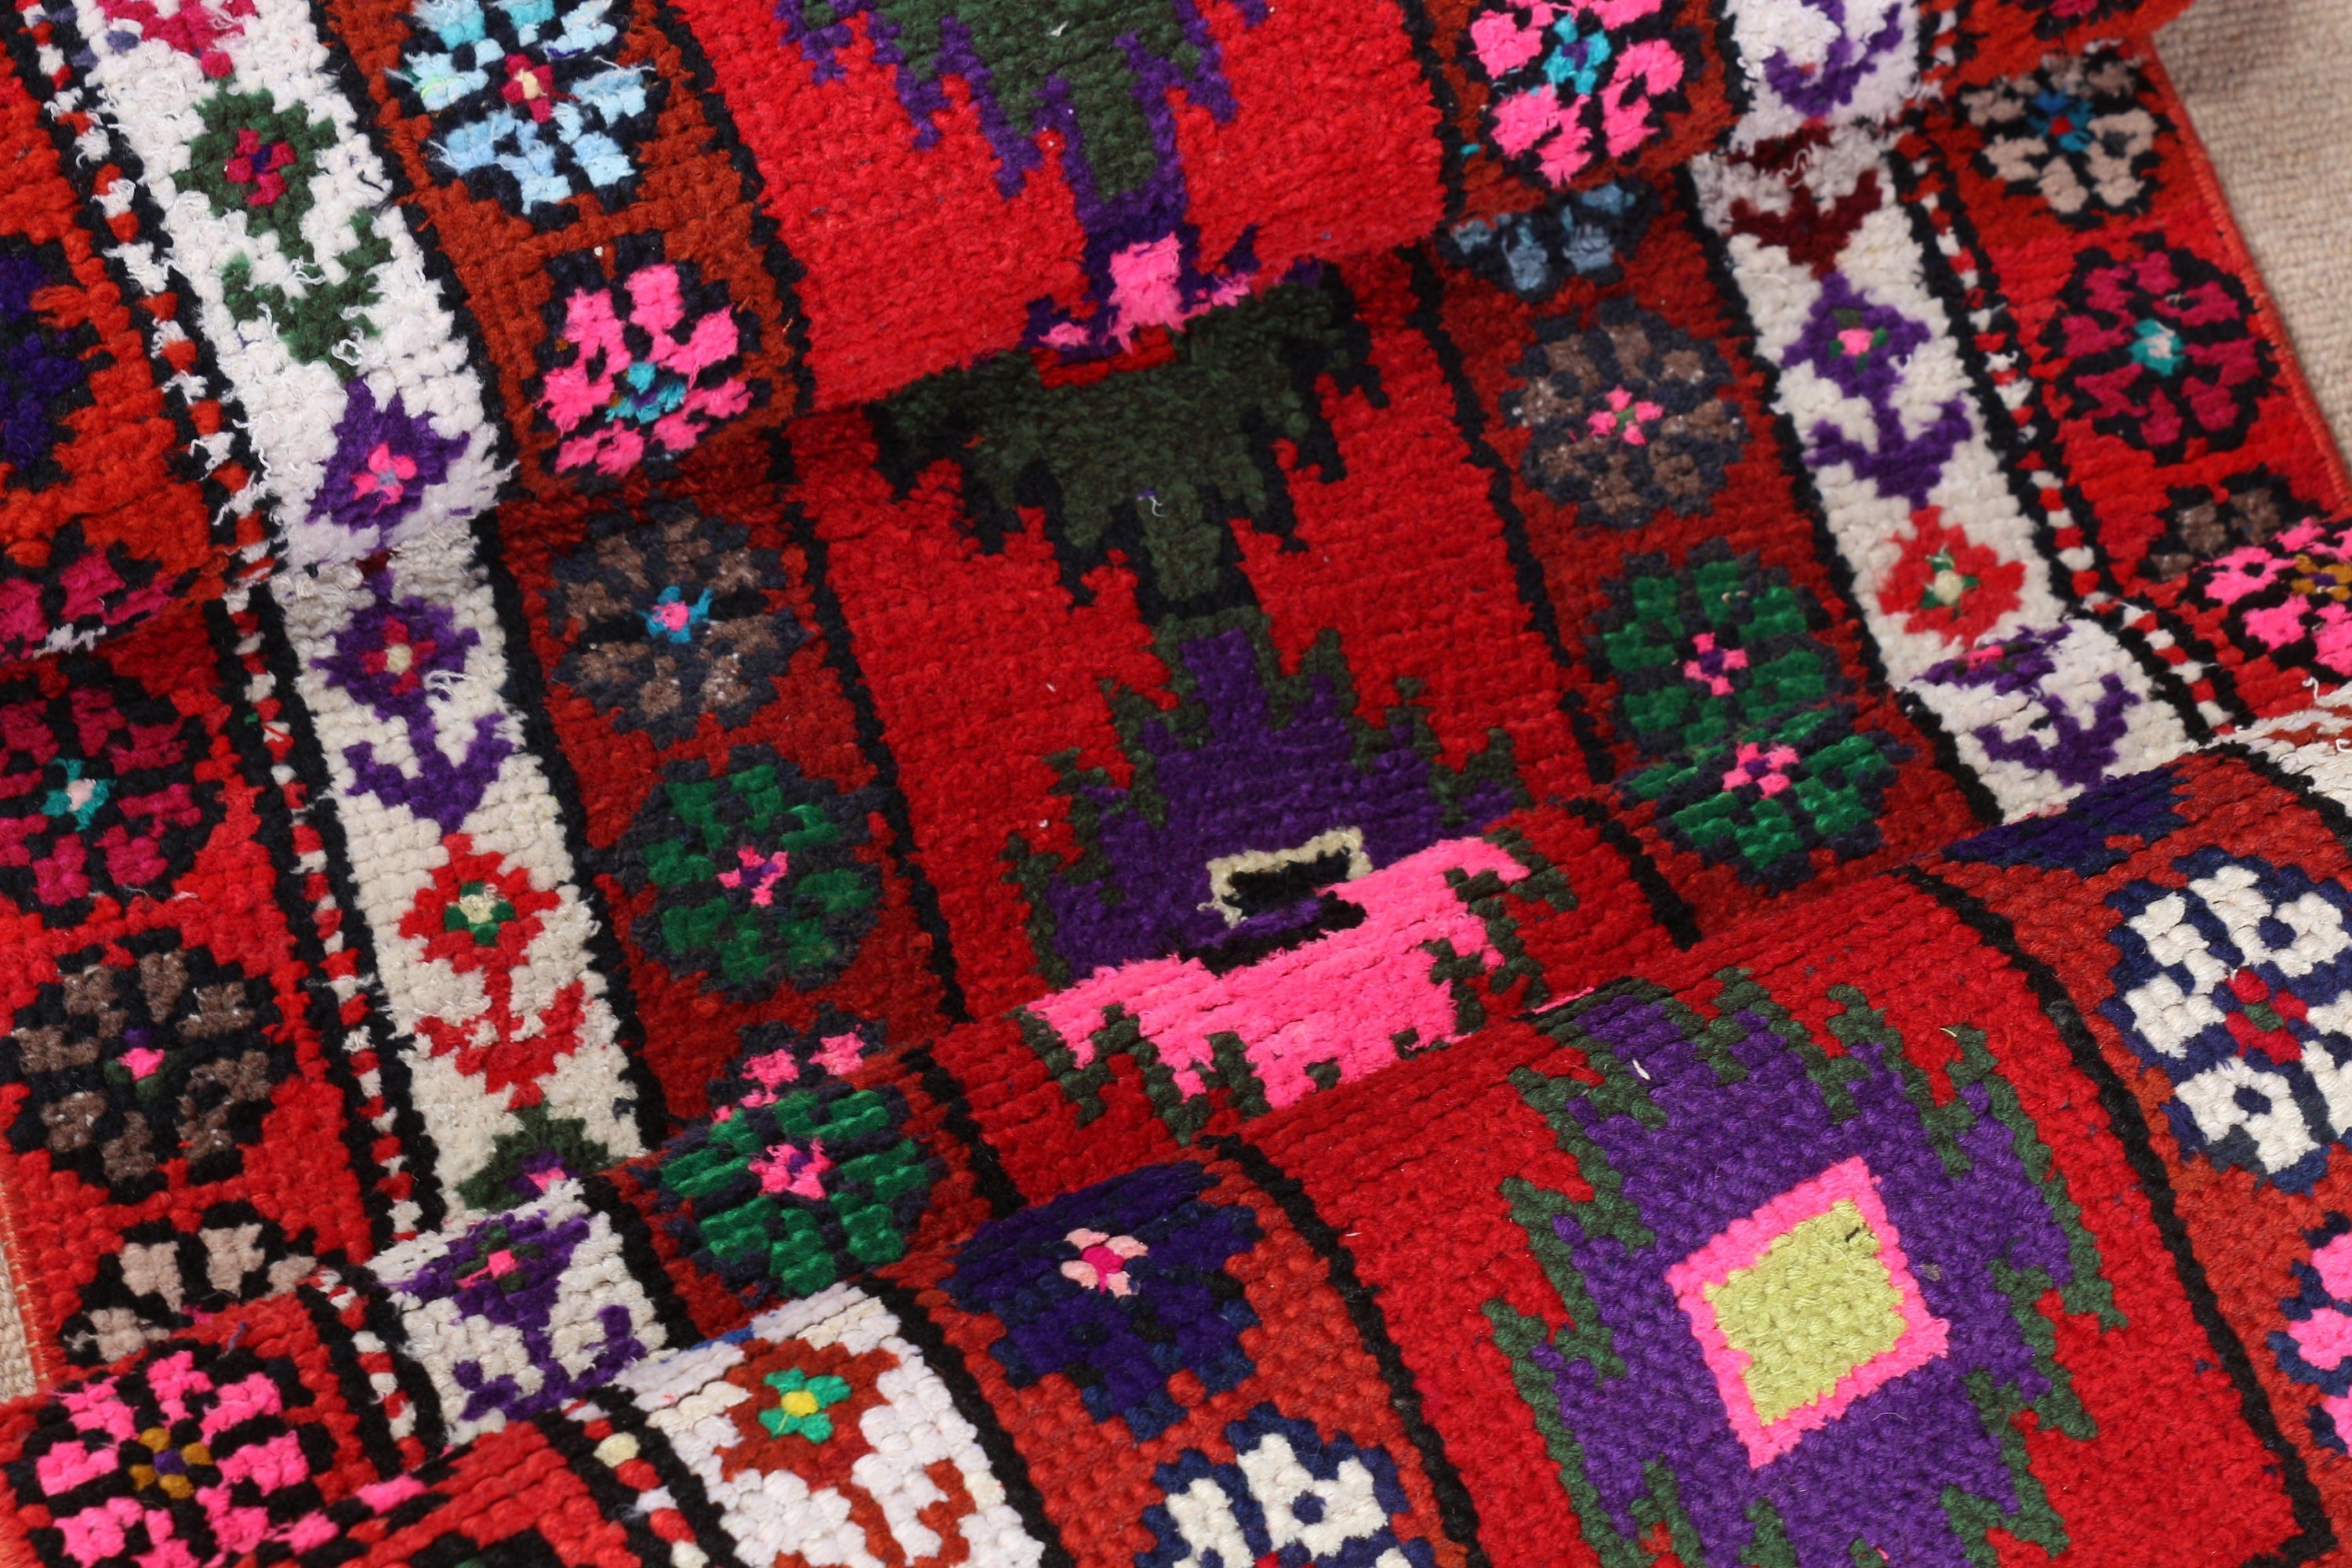 Vintage Rug, Rugs for Runner, Wool Rug, Turkish Rugs, Antique Rug, 2.1x9.2 ft Runner Rug, Pink Antique Rugs, Ethnic Rugs, Corridor Rug